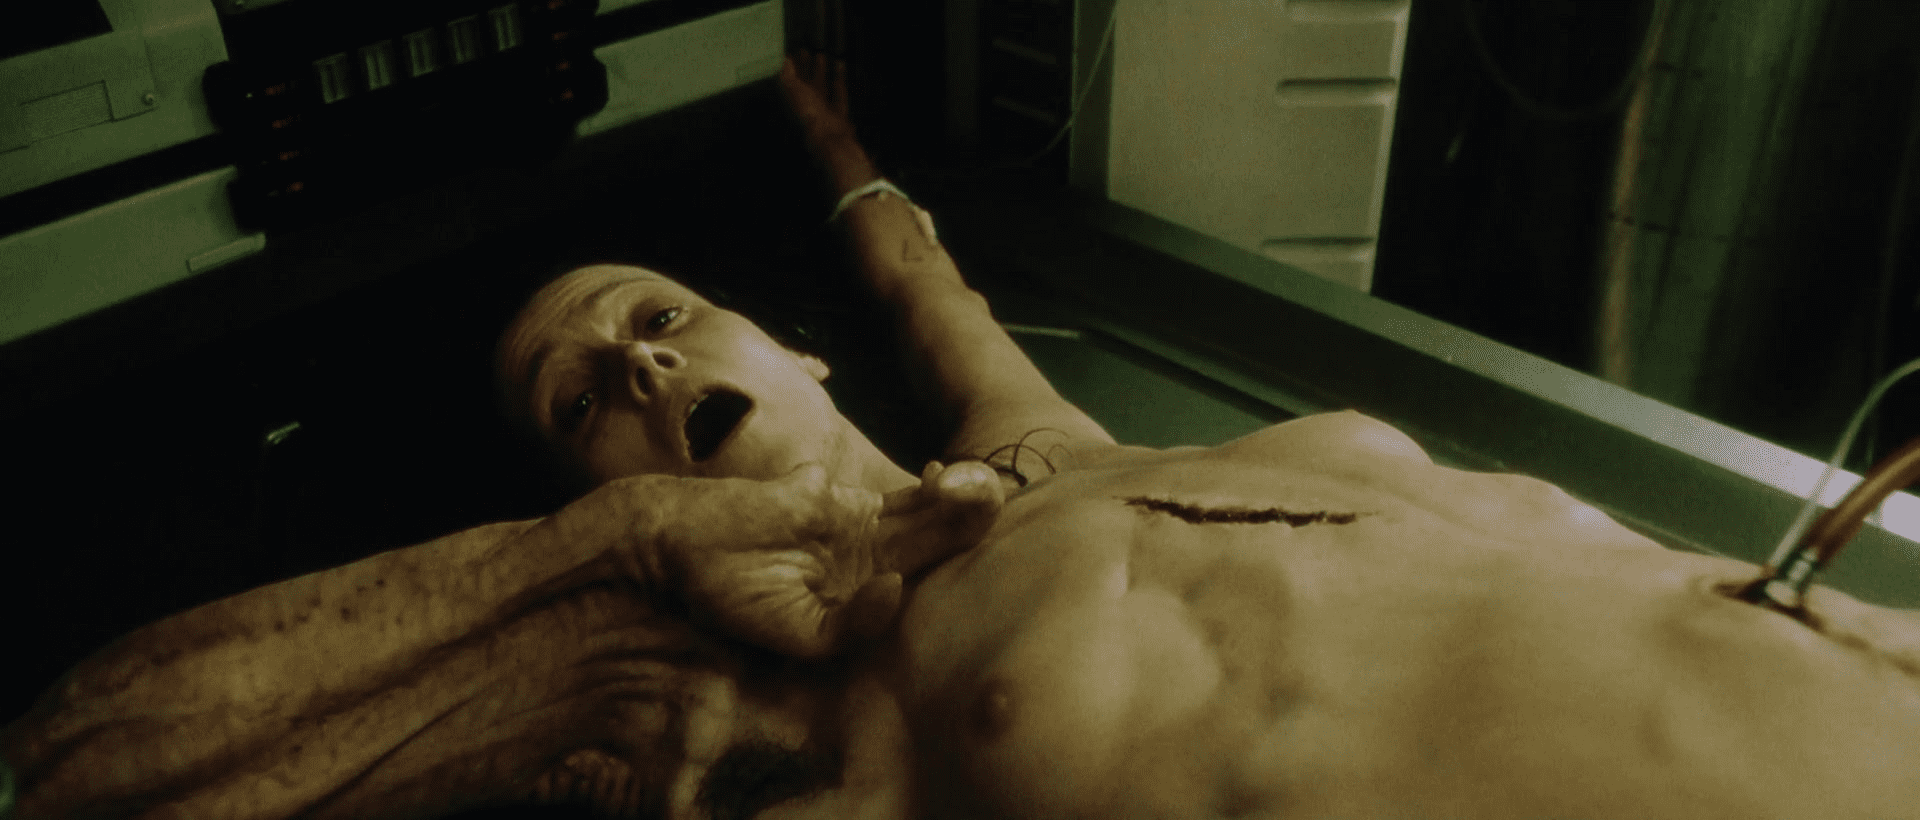 Ripley's clone in Alien Resurrection begs for death